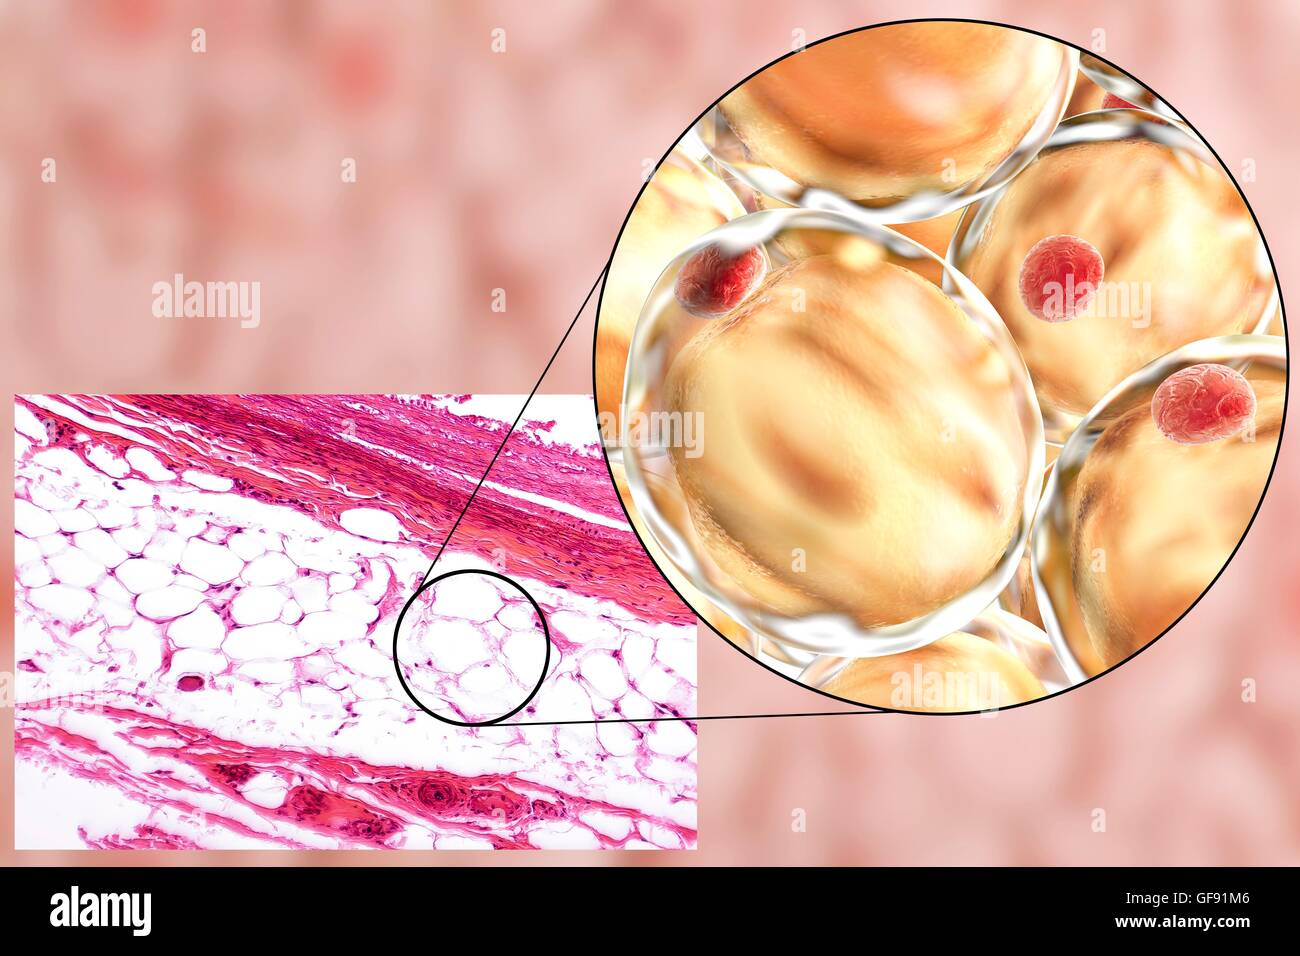 Las células de grasa, luz micrograph y equipo ilustración. Tejido adiposo blanco compuesto de adipocitos (células grasas). Los adipocitos forman el tejido adiposo, que almacena la energía como una capa aislante de grasa. Tejido adiposo blanco se utiliza como un almacén de energía sino también un Foto de stock